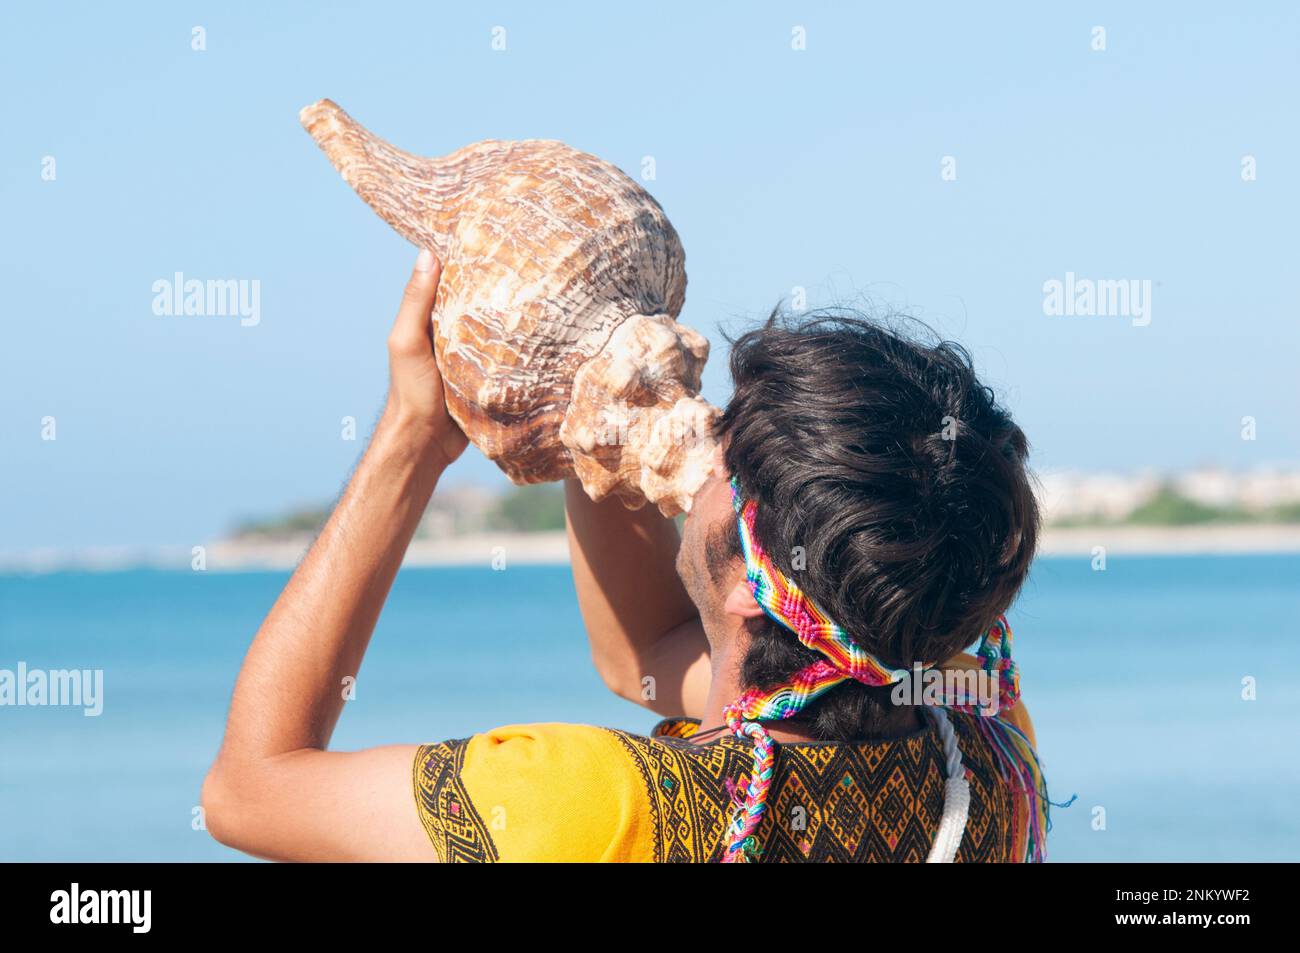 Homme maya en costume traditionnel jouant dans une carapace de mer sur la plage pendant une cérémonie. Vue arrière Banque D'Images